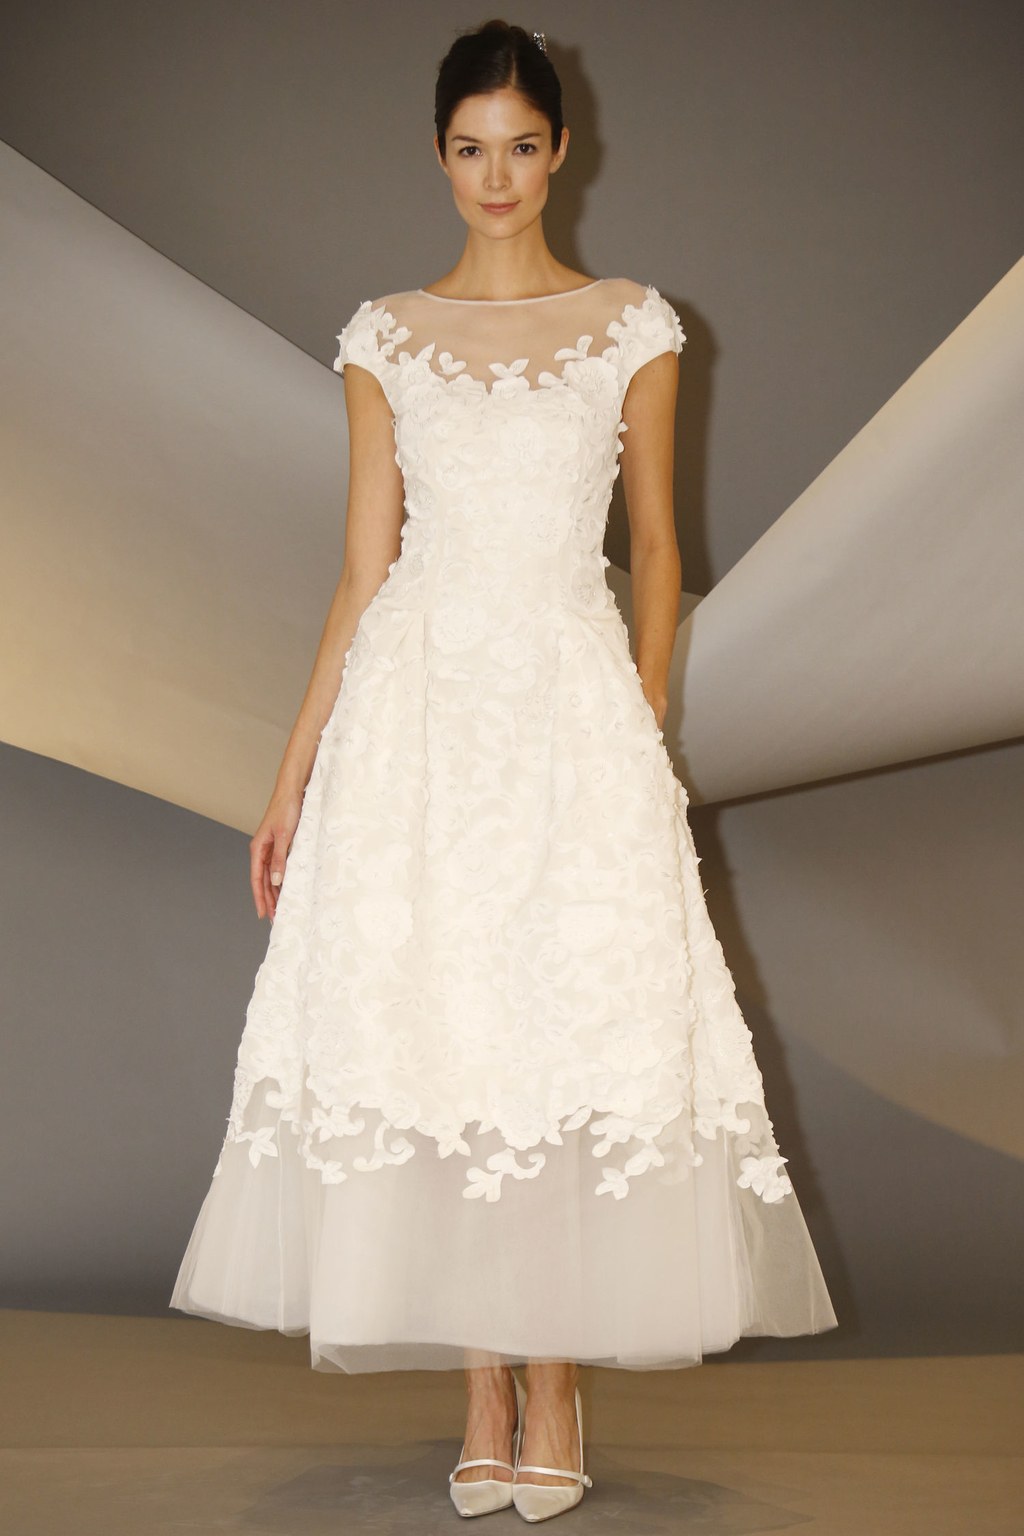 از دلایل شهرت لباس عروس های برند کارولینا هررا میتوان به دوخت لباس عروسهای رنگی اشاره کرد